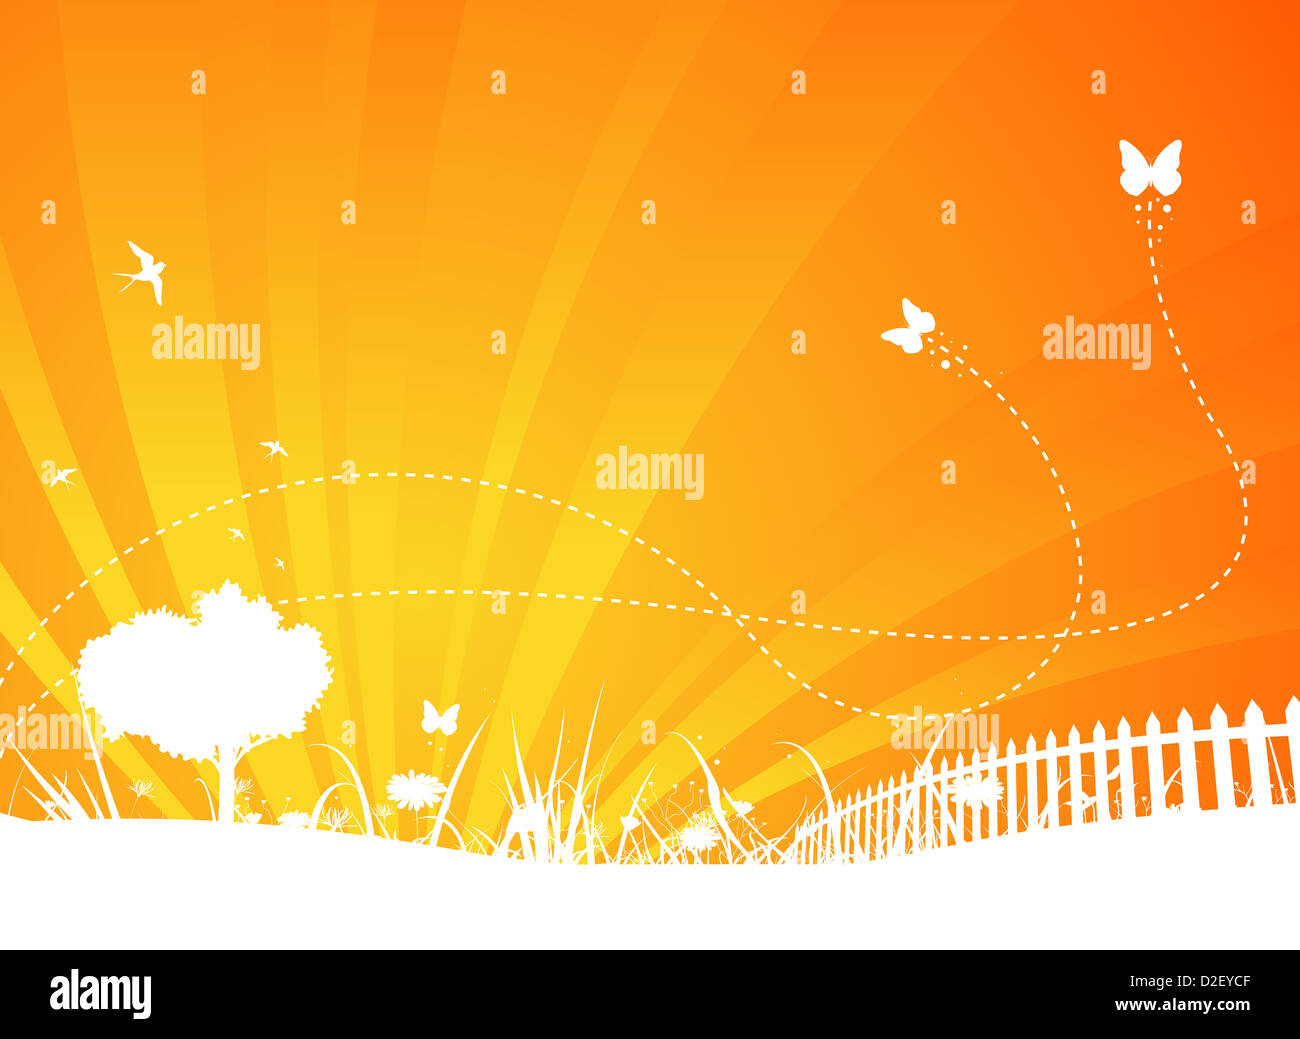 Abbildung einer abstrakten orange Garten zweifarbige Plakat Hintergrund für Ihre Saison-Kommunikation mit Schmetterlinge Insekten Stockfoto